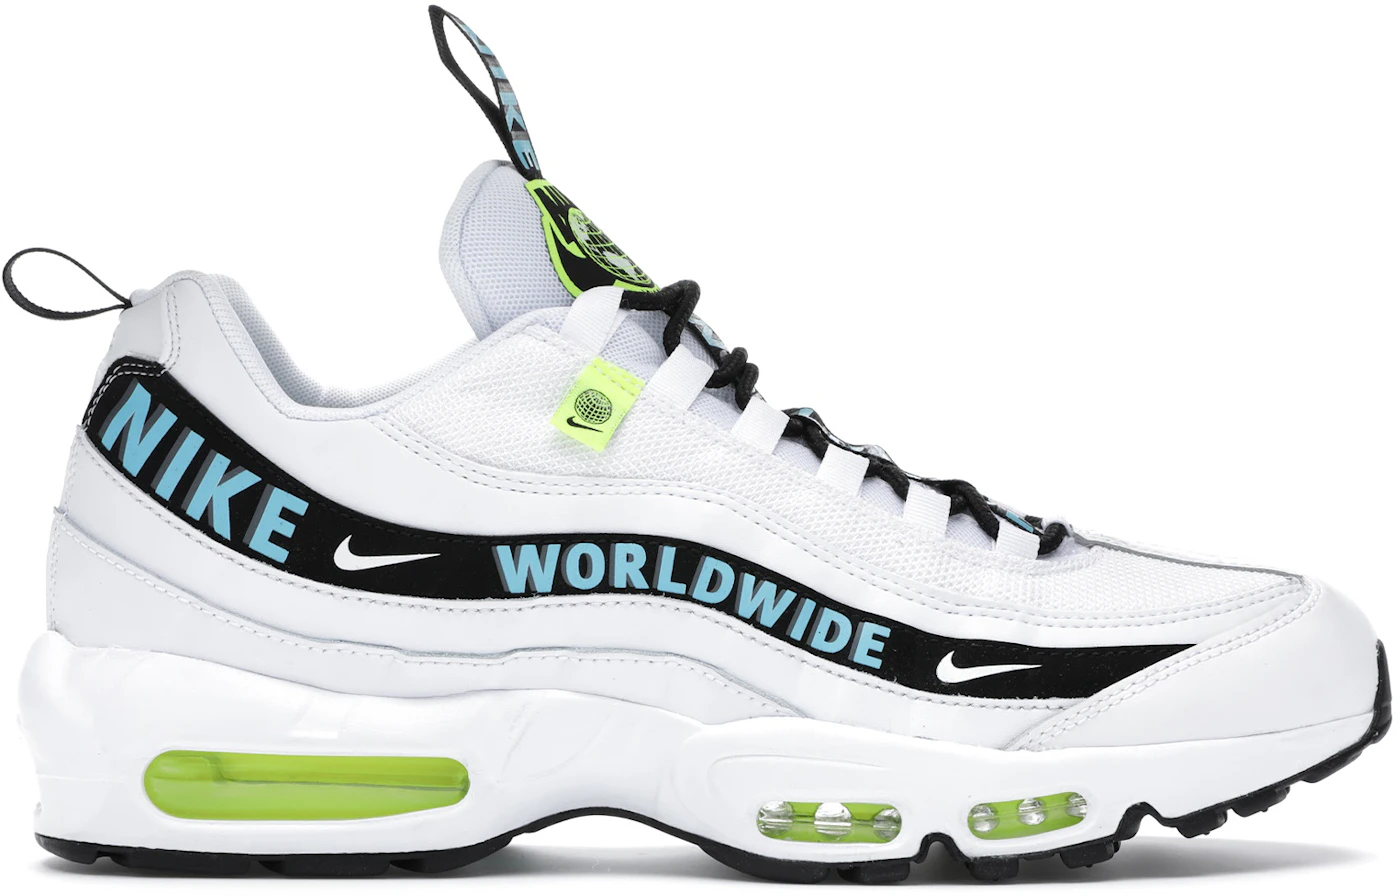 Nike Worldwide Pack Sneaker Release Dates